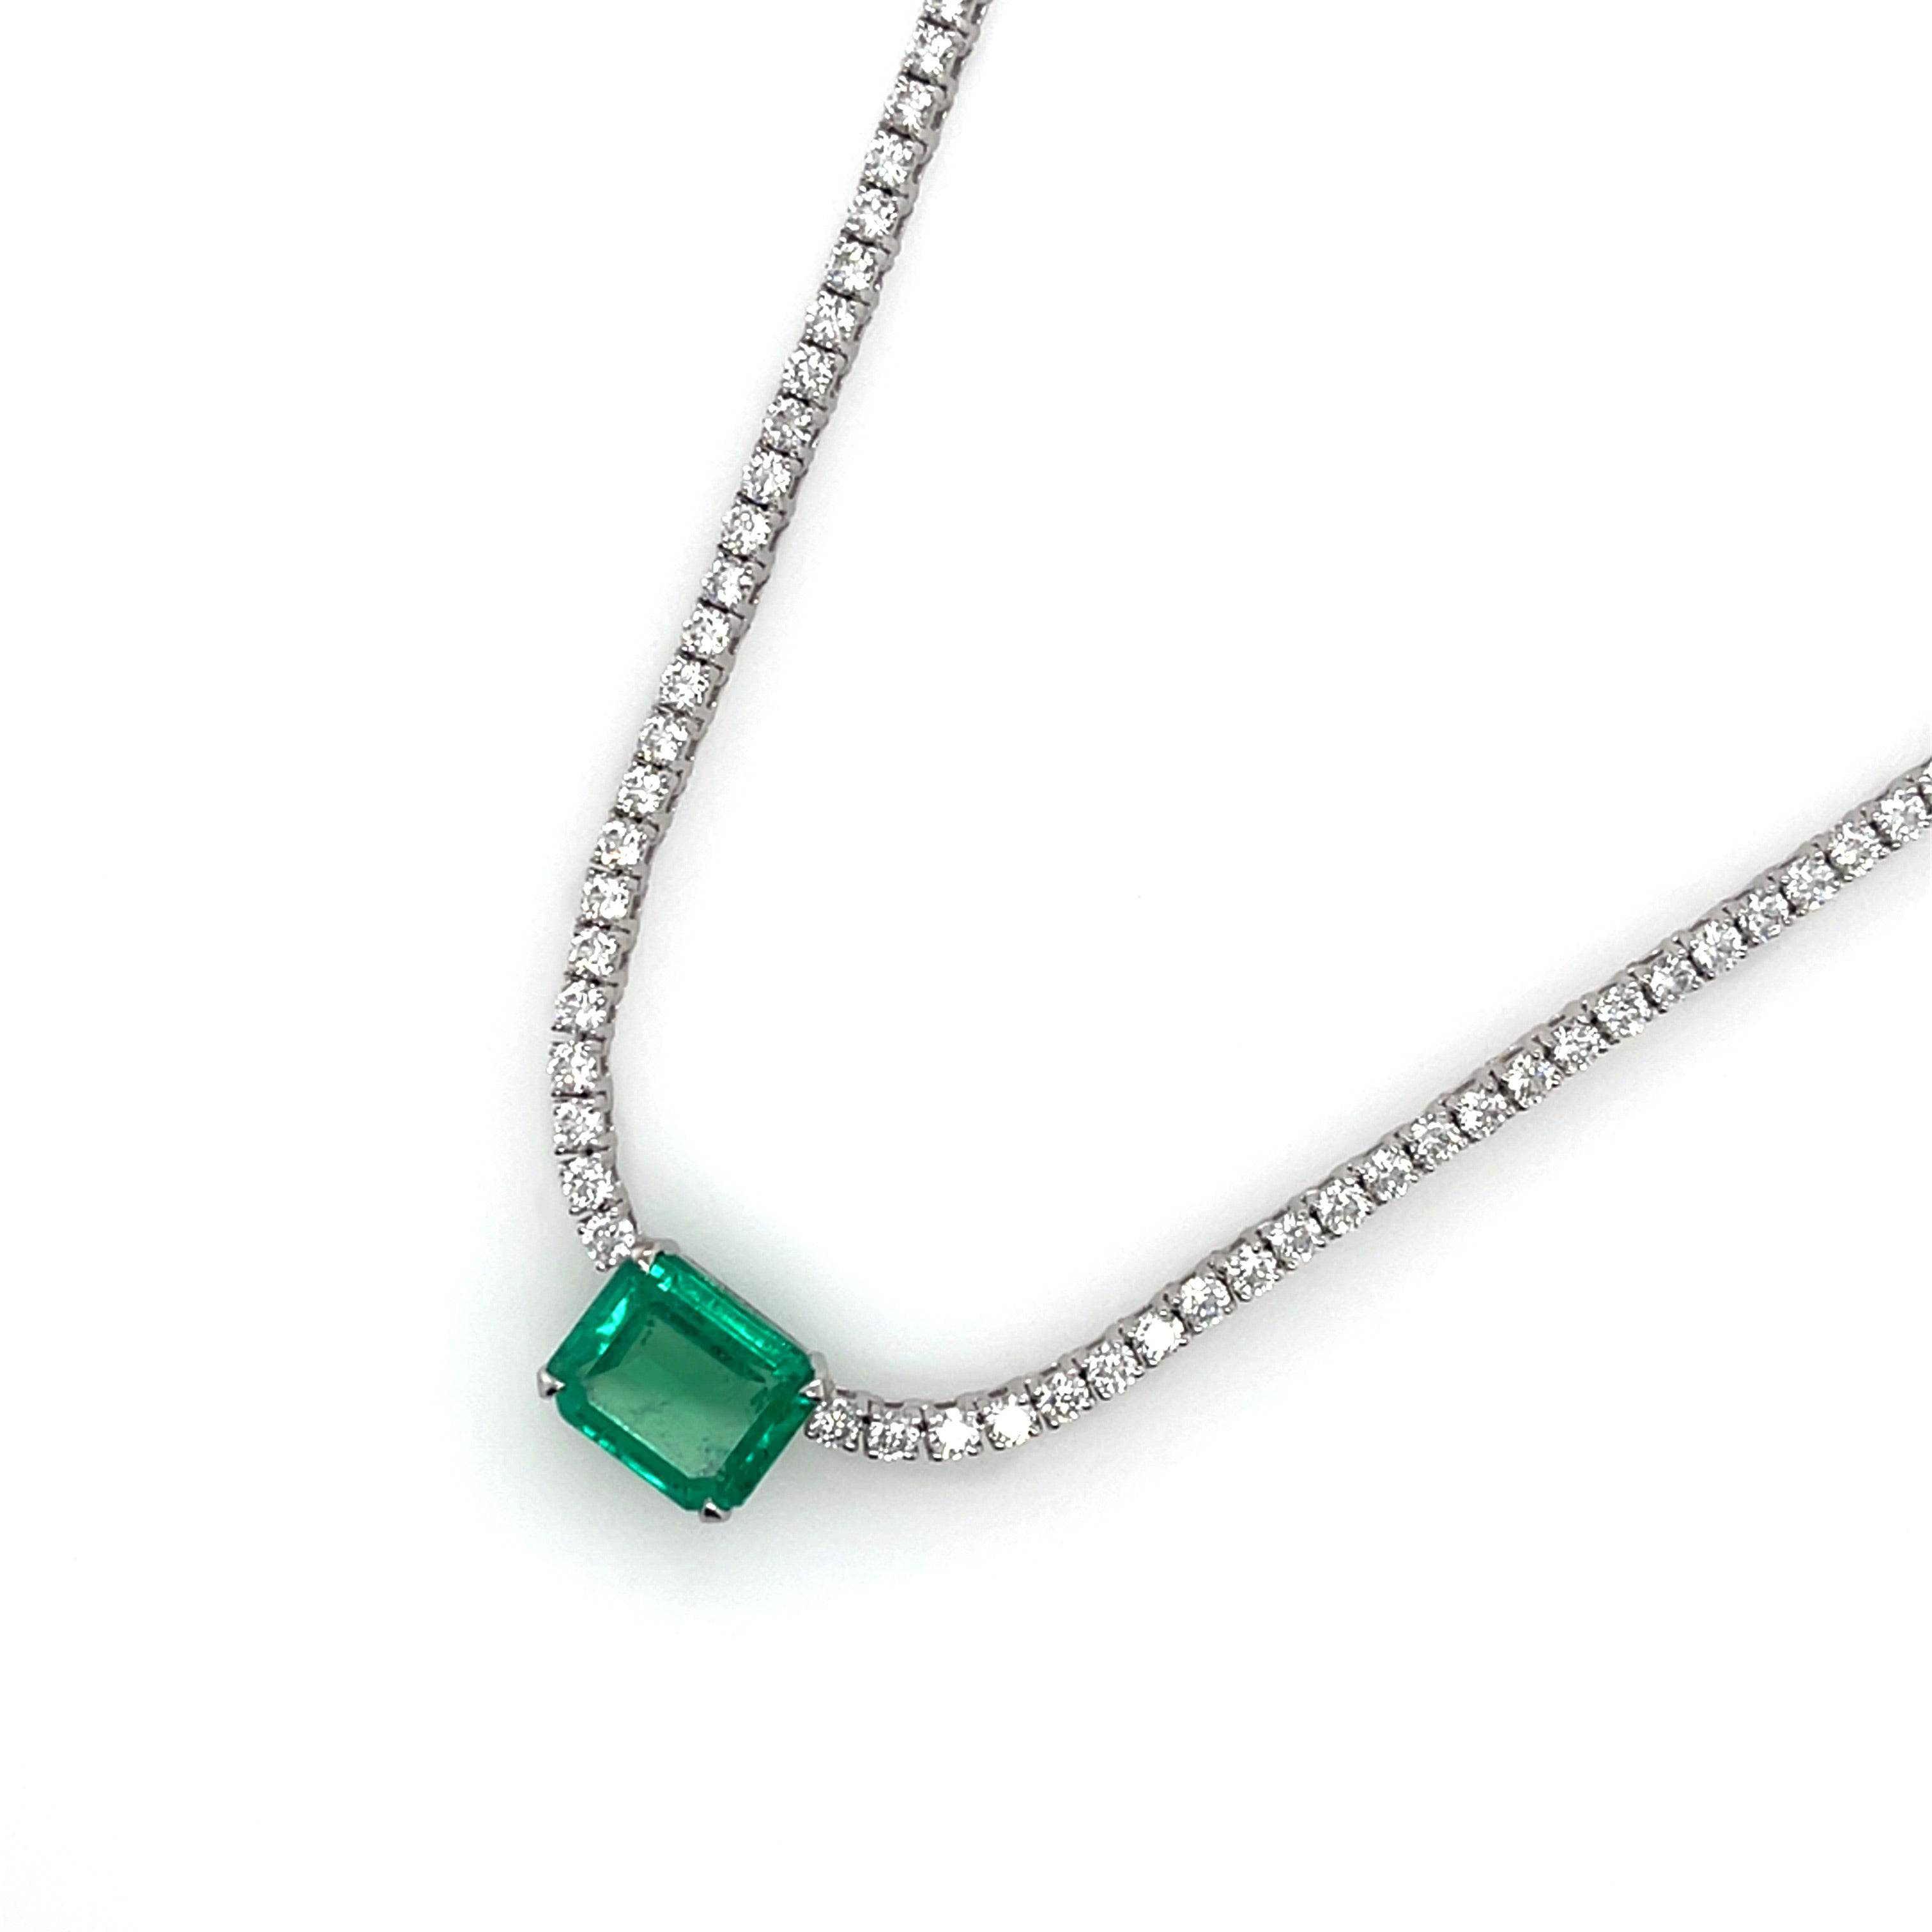 Emerald & Diamonds Necklace